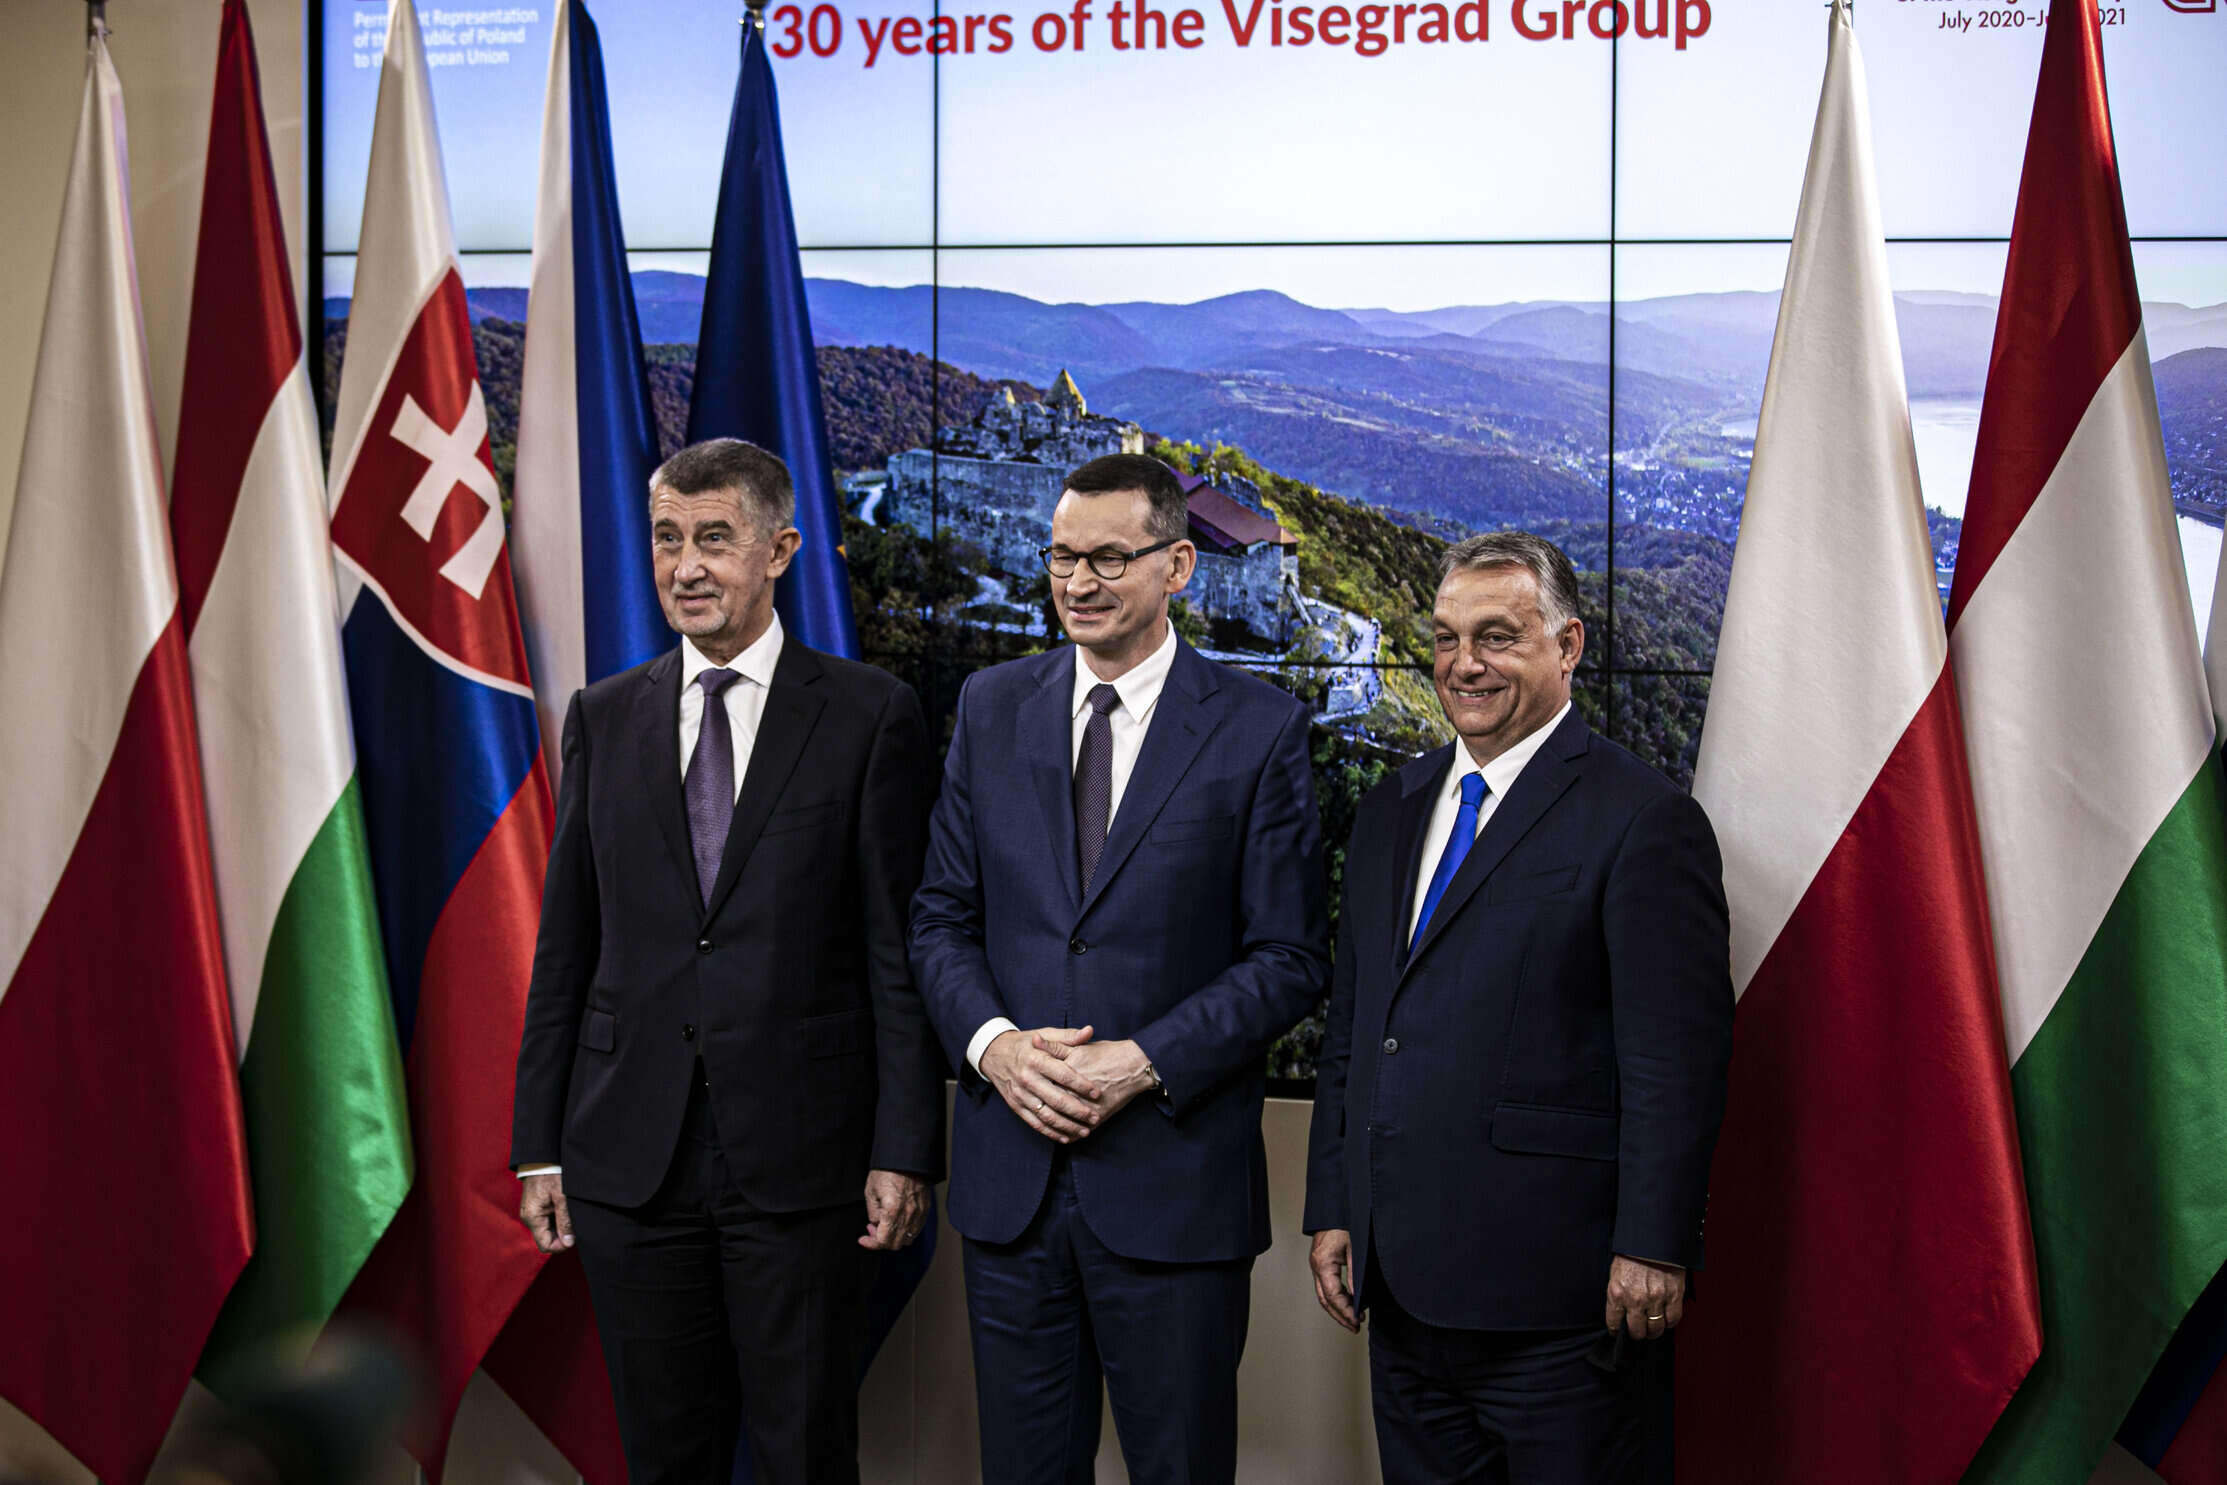 orbán and visegrád partners